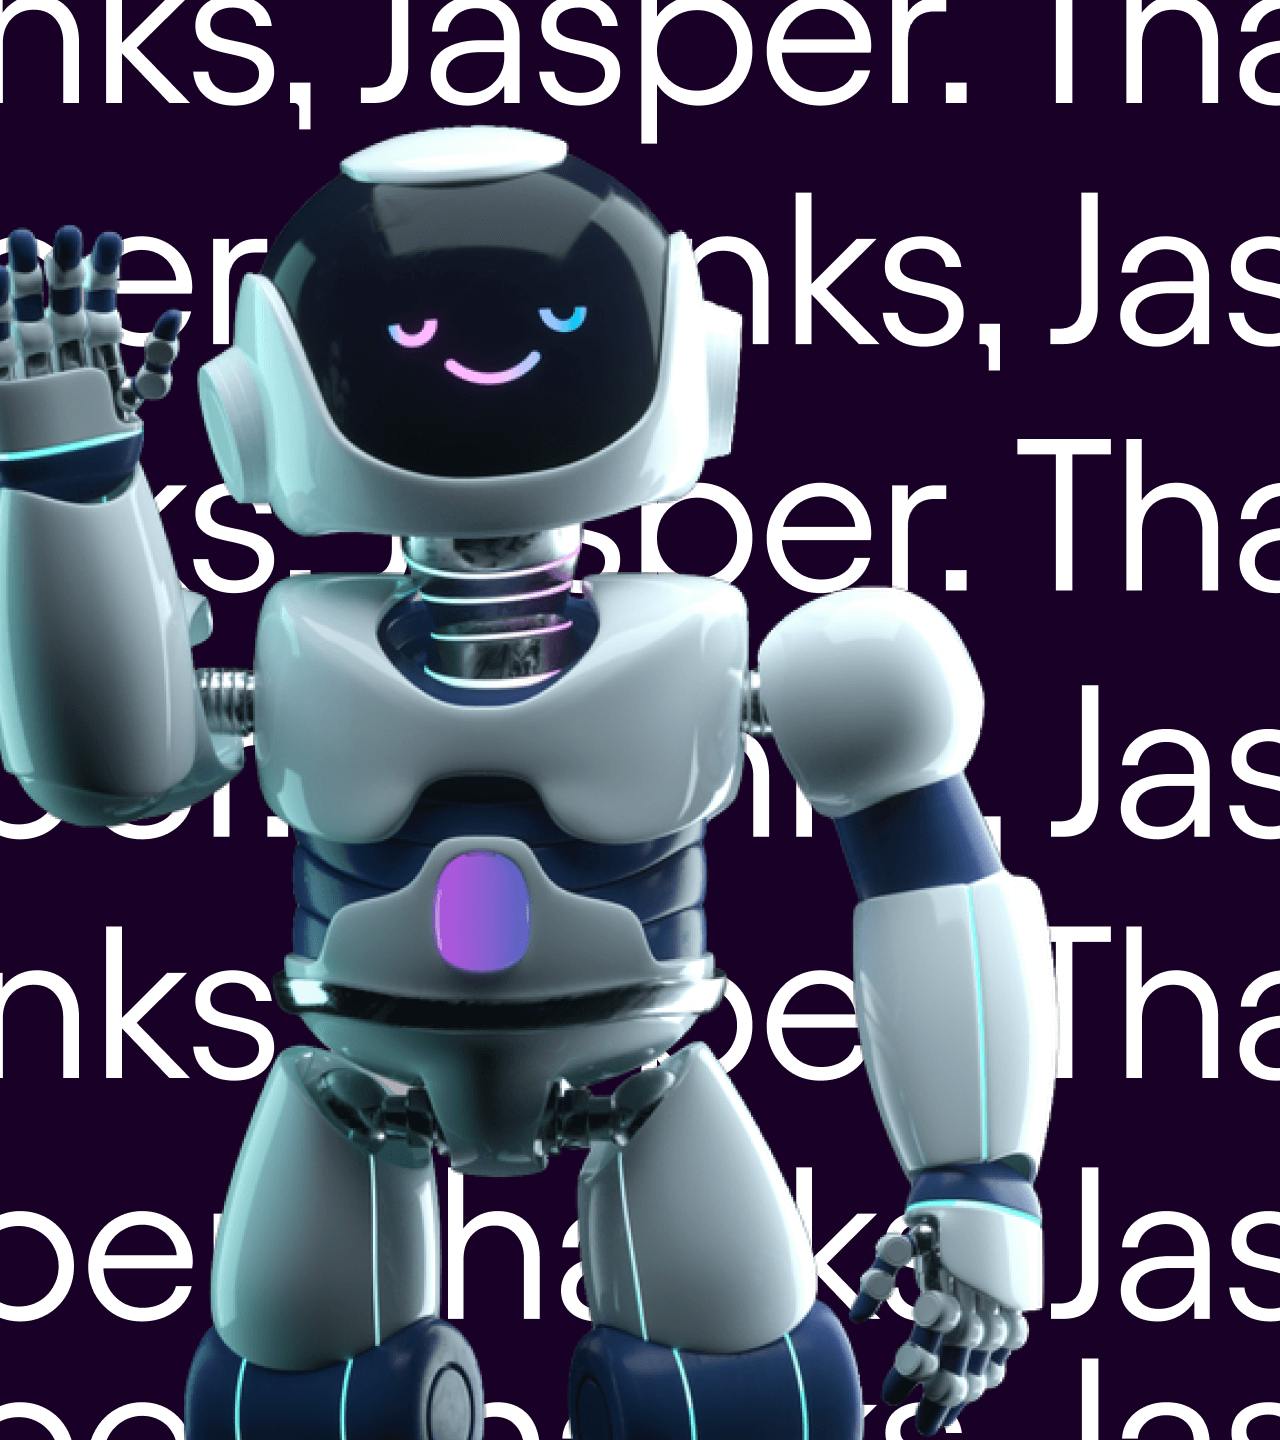 Jasper mascot robot that helps you navigate through jasper's features.